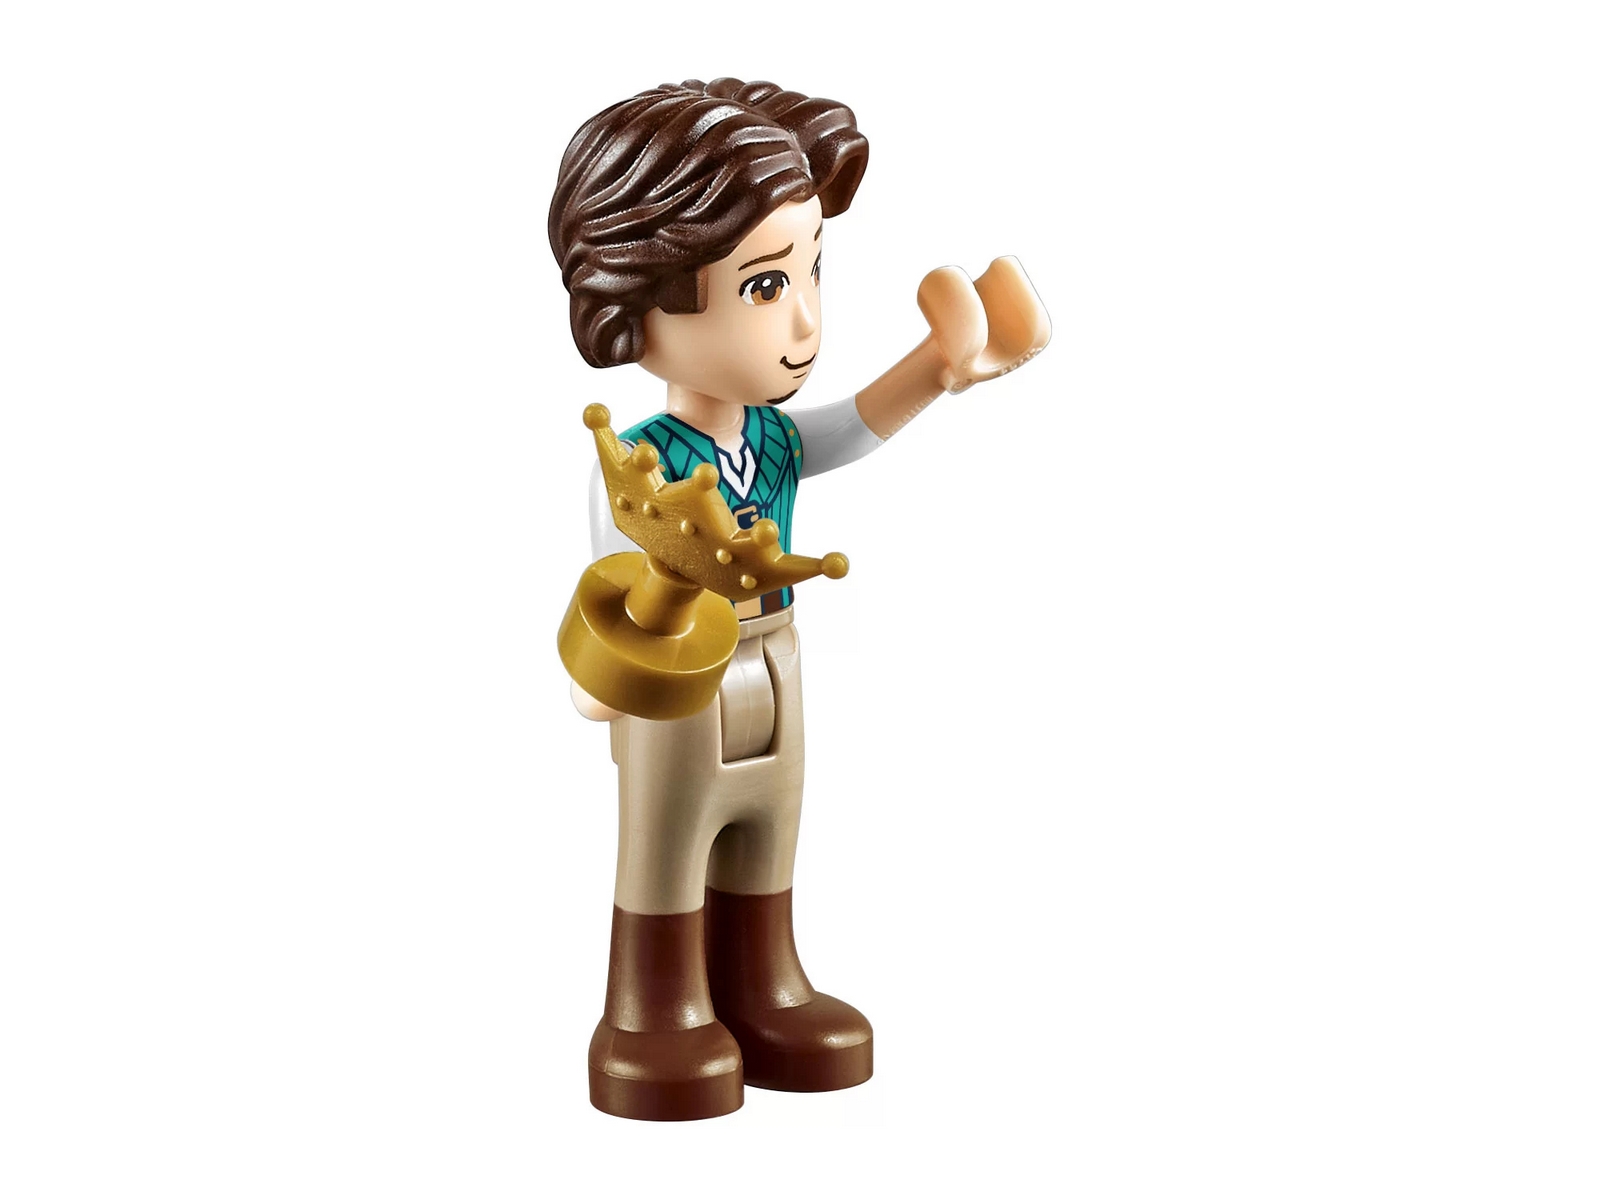 Конструктор LEGO Disney Princess «Башня Рапунцель» 43187 / 369 деталей